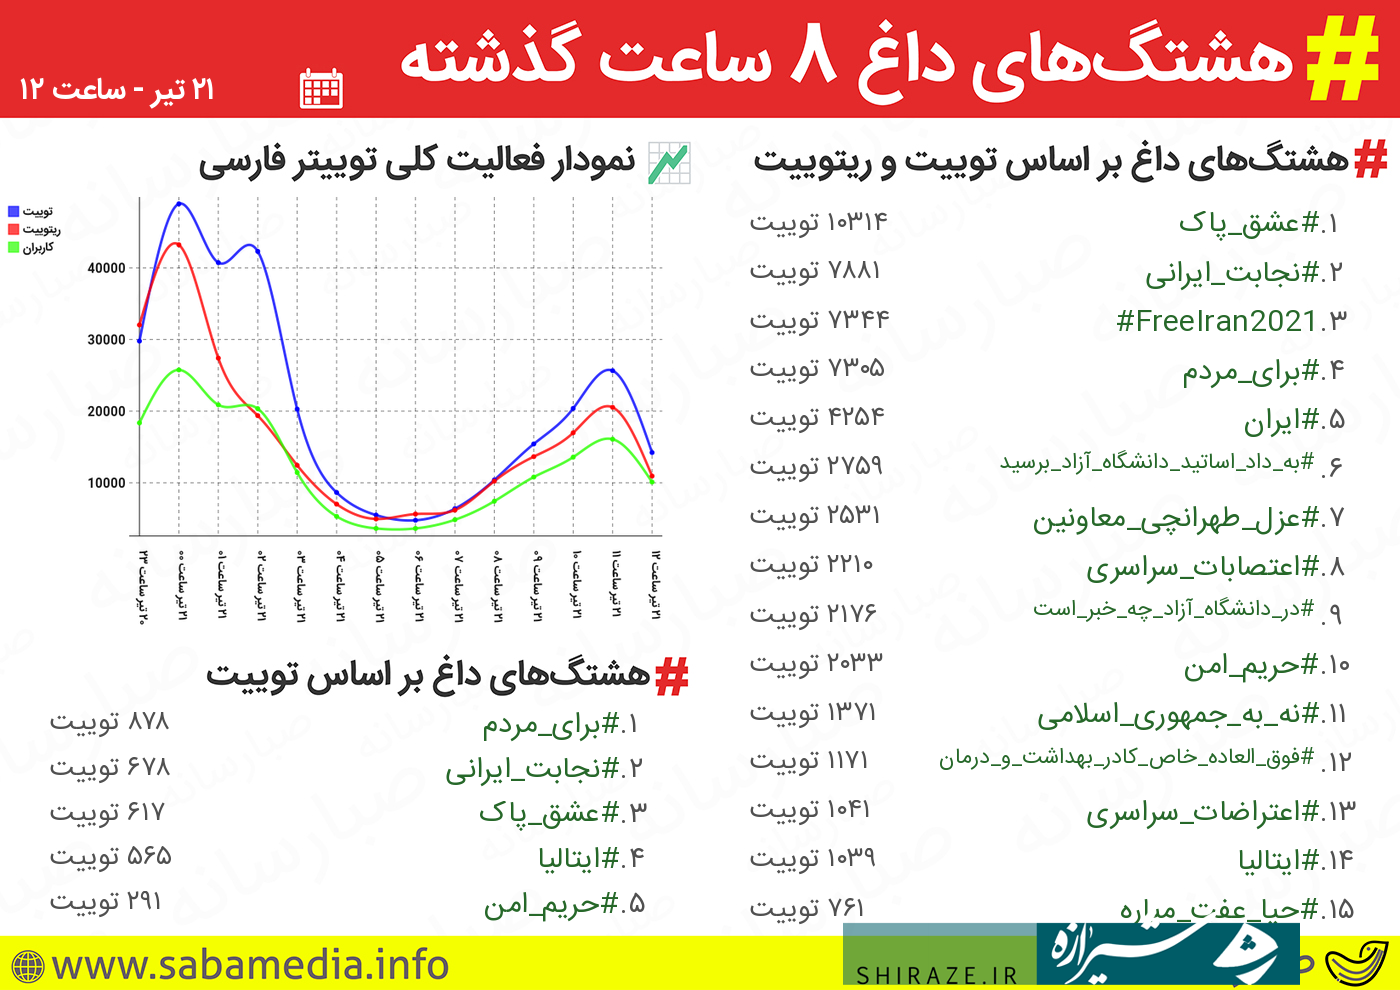 هشتگ #برای_مردم ترند نخست توییتر فارسی شد